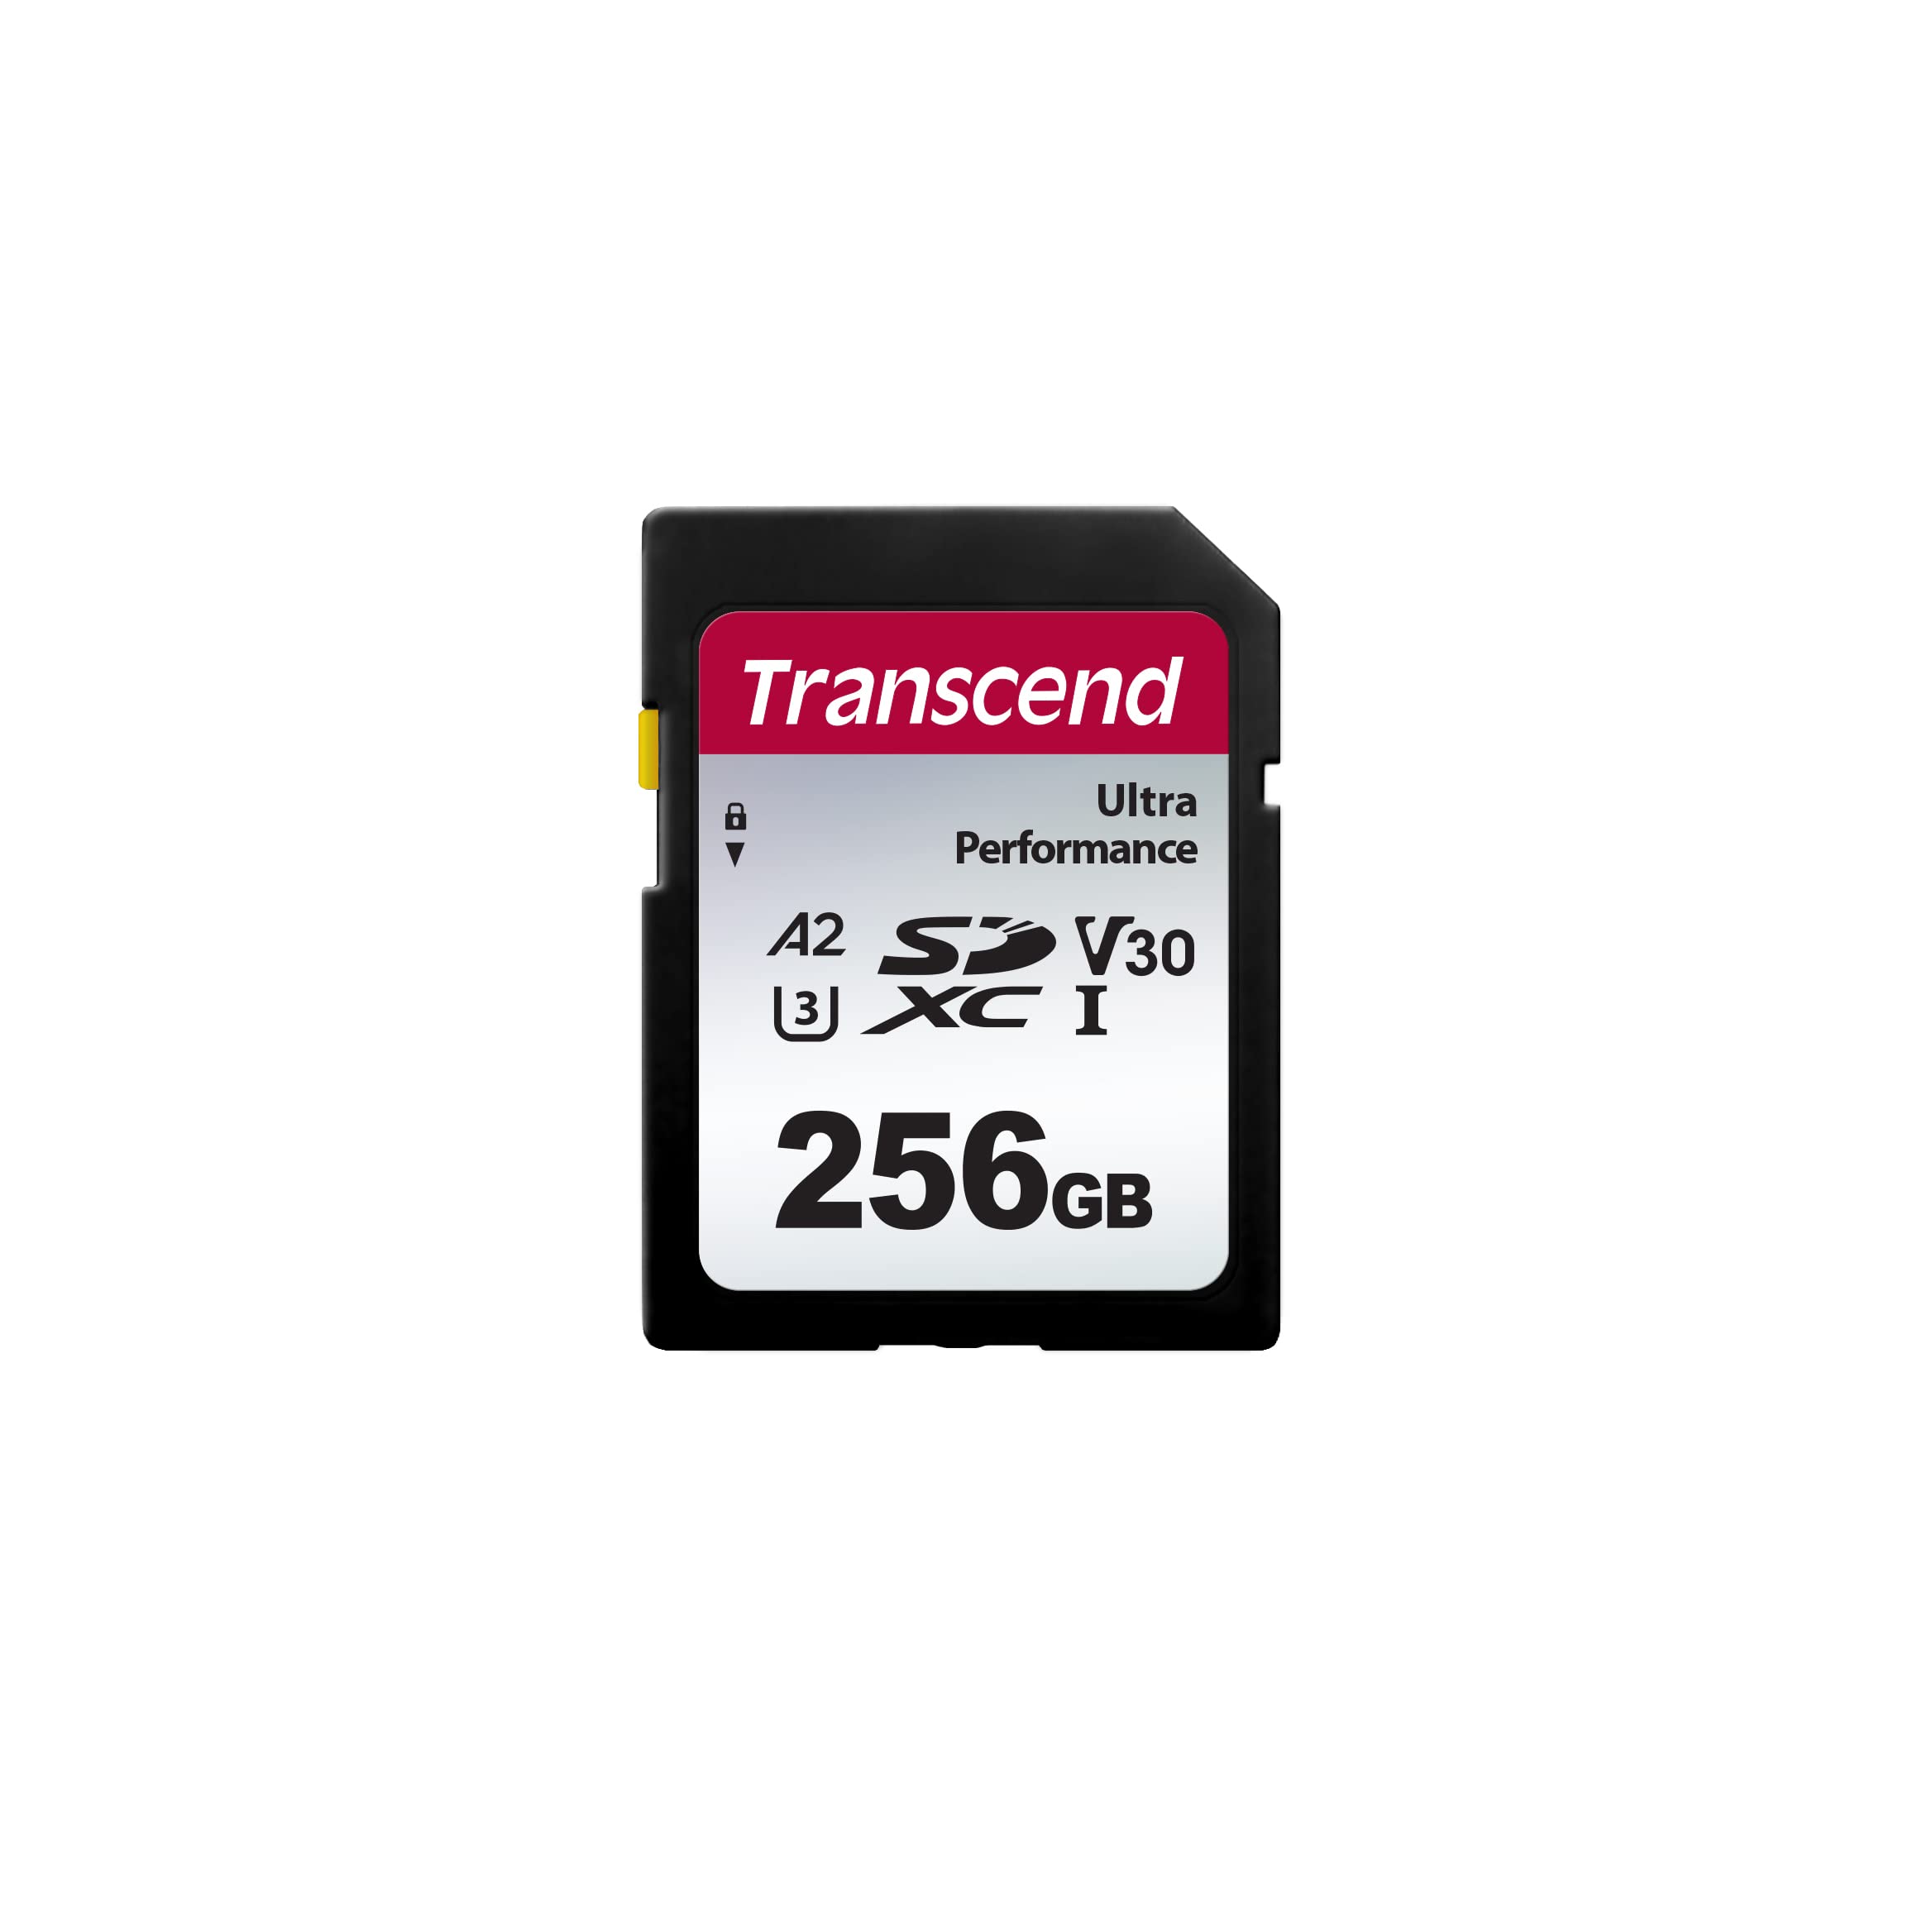 トランセンド SDカード 256GB UHS-I U3 V30 A2 対応 Ultra Performance (最大転送速度160MB/s)データ復旧ソフト無償提供TS256GSDC340S-E